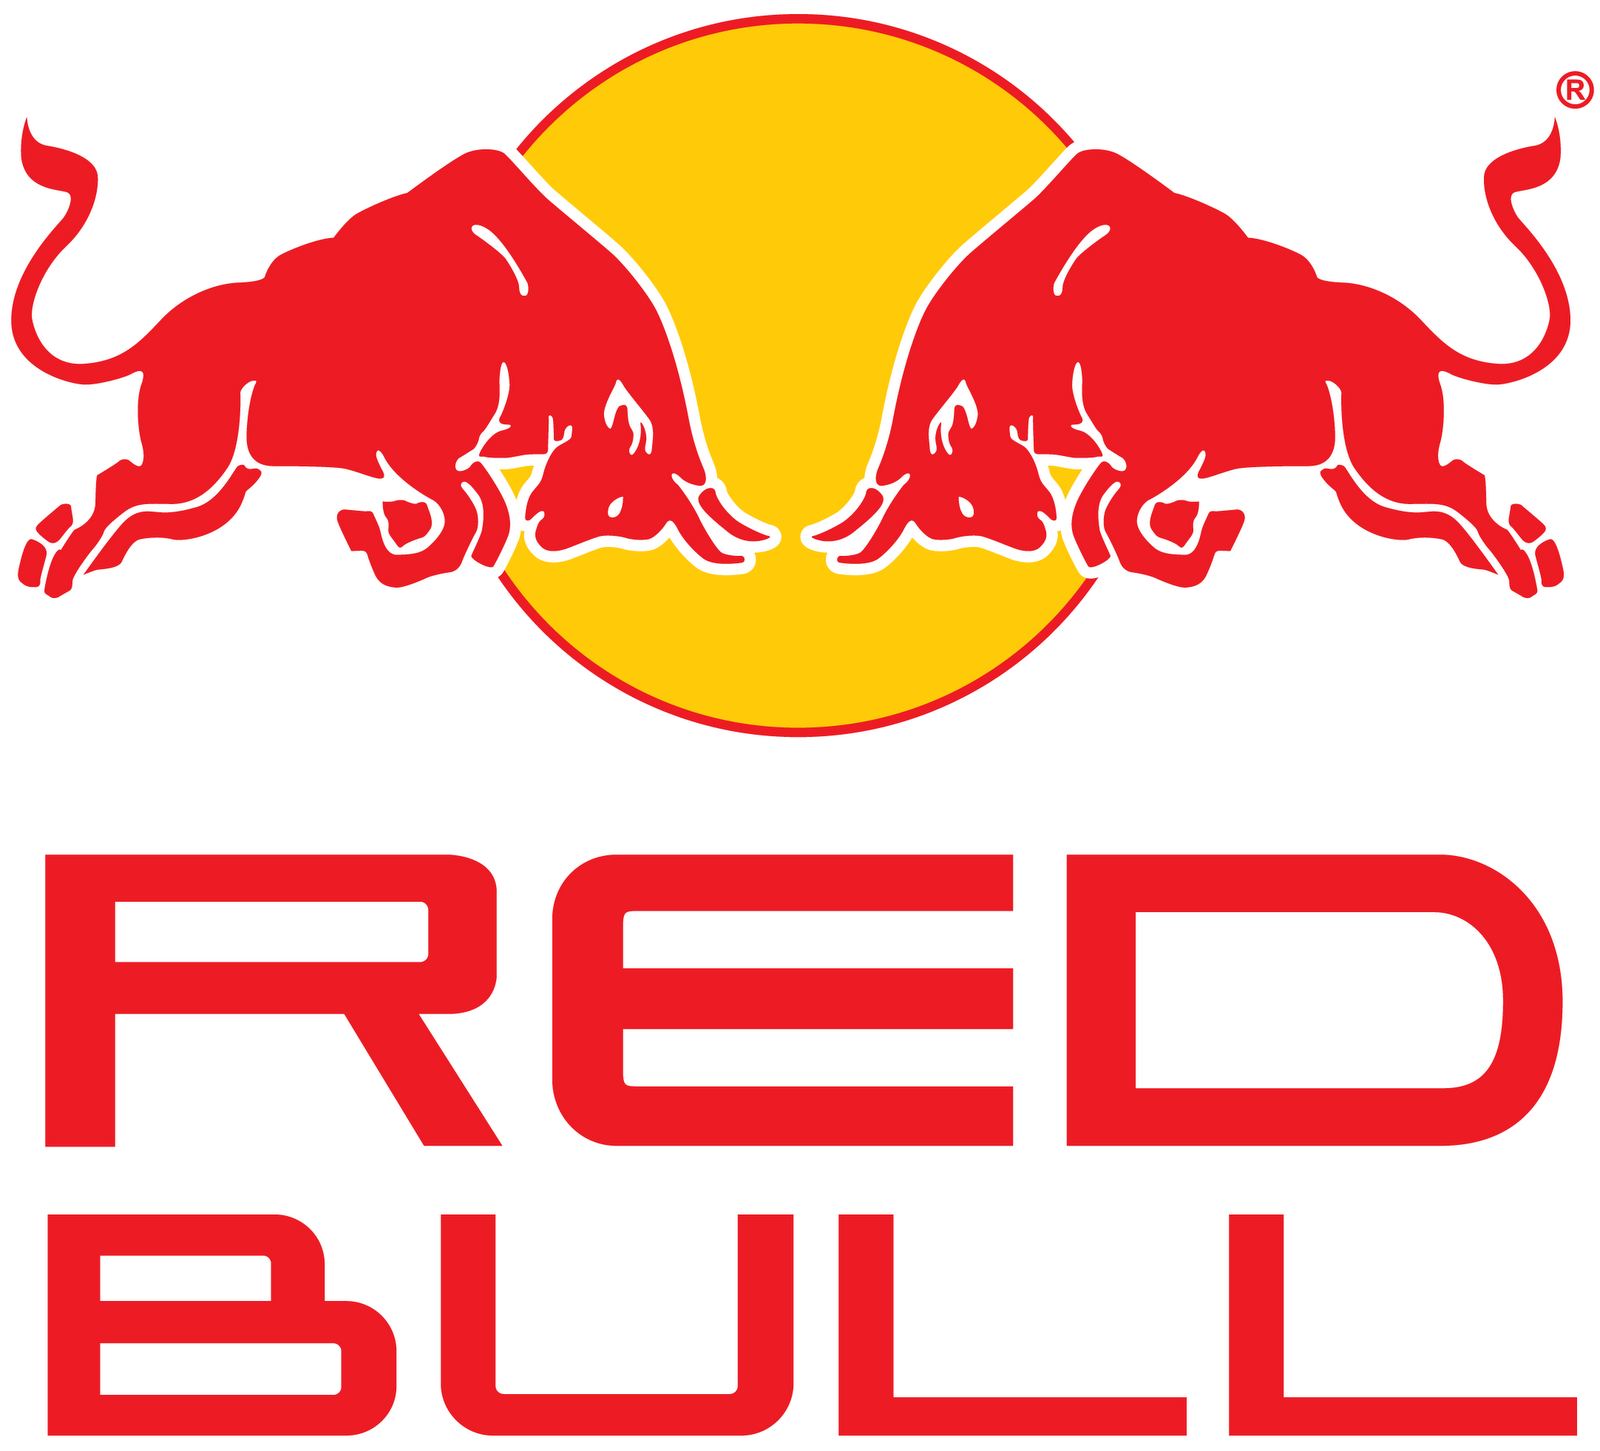 Logotipode Red Bull En Formato Vectorial